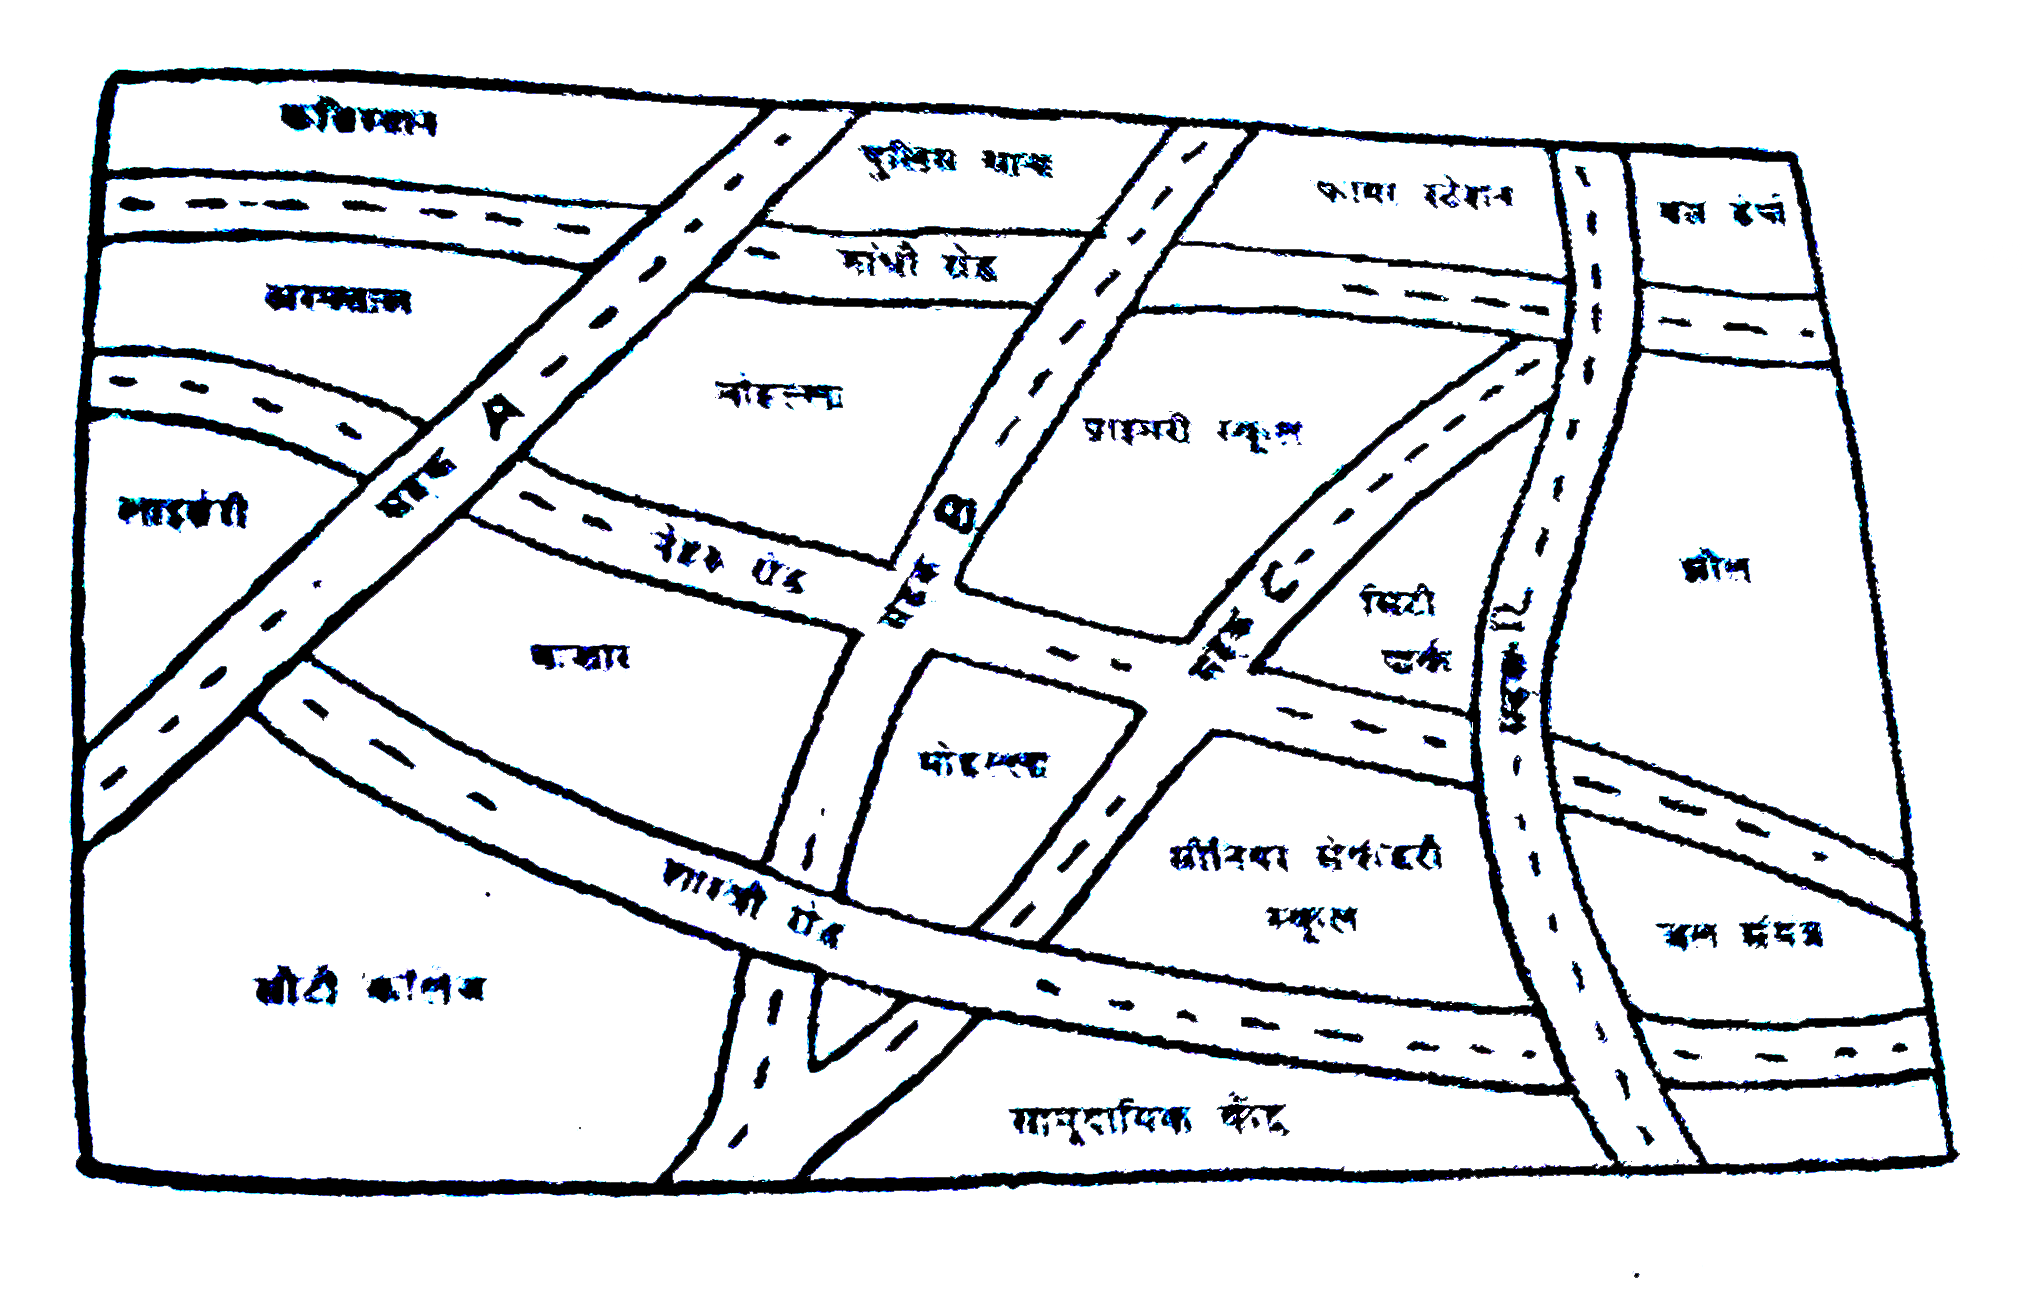 एक नगर के दिए हुए मानचित्र को देखिए। निम्नलिखित प्रश्नों के उत्तर दीजिए :    (a)  इस मानचित्र में इस प्रकार रंग भरिए : नीला - जल, लाल - फायर-स्टेशन: नारंगी - लाइब्रेरी, पीला - स्कूल, हरा - पार्क, गुलाबी - कॉलेज, बैंगनी - अस्पताल,  भूरा - कब्रिस्तान।    (b)  सड़क C और नेहरू रोड के प्रतिच्छेदन पर एक हरा 'X ' तथा गांधी रोड और सड़क A के प्रतिच्छेदन पर एक हरा 'Y ' खींचिए ।    (c ) लाइब्रेरी से बस डिपो तक एक छोटा सड़क मार्ग लाल रंग से खींचिए।   (d) कौन अधिक पूर्व  में है - सिटी पार्क या बाजार ?   (e ) कौन अधिक दक्षिण में है? - प्राइमरी स्कूल या सीनियर सैकेंडरी स्कूल?